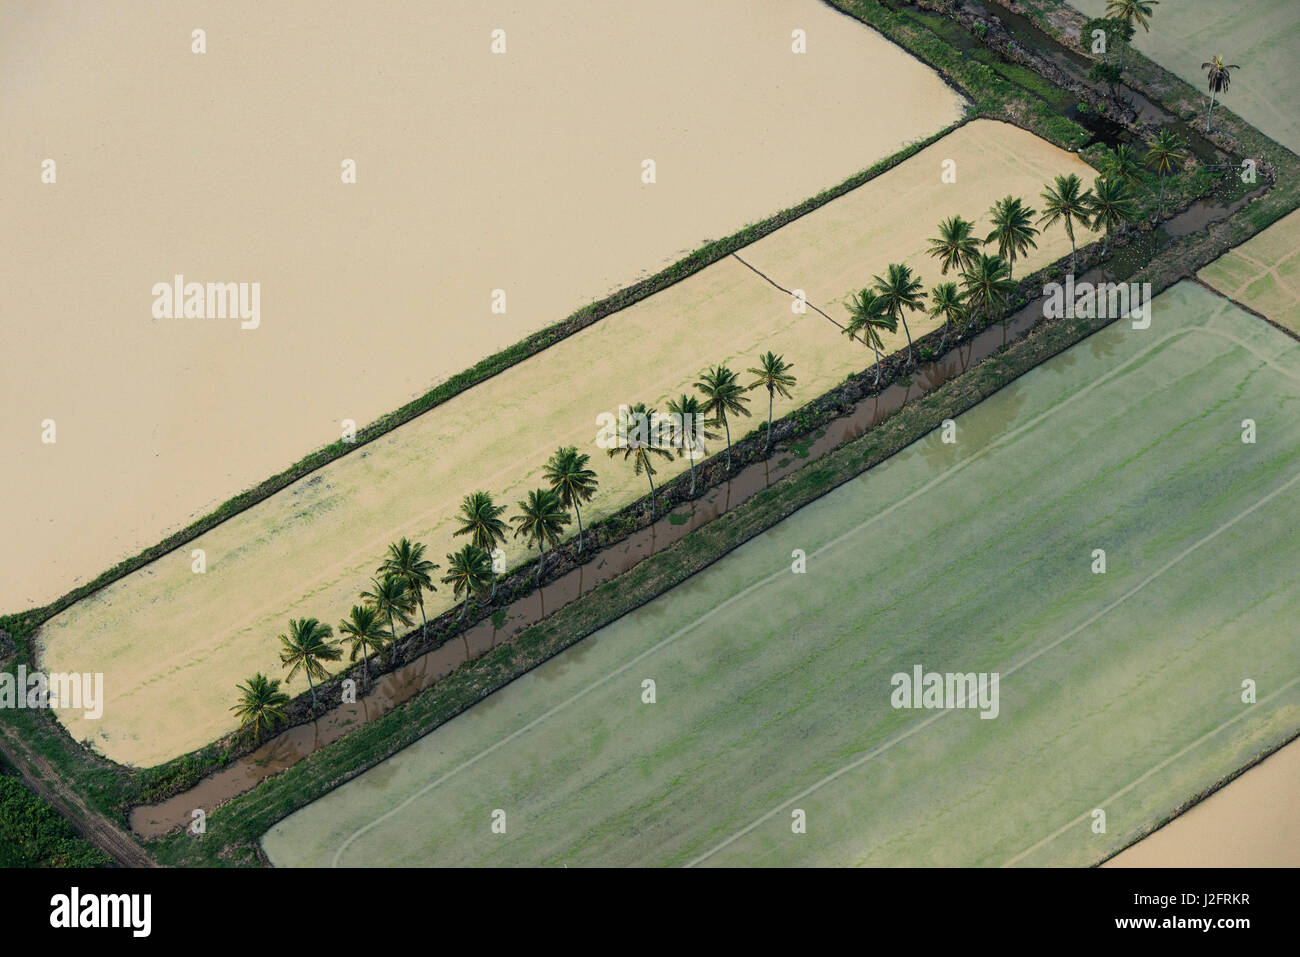 Rice production. Coastal area, Guyana Stock Photo